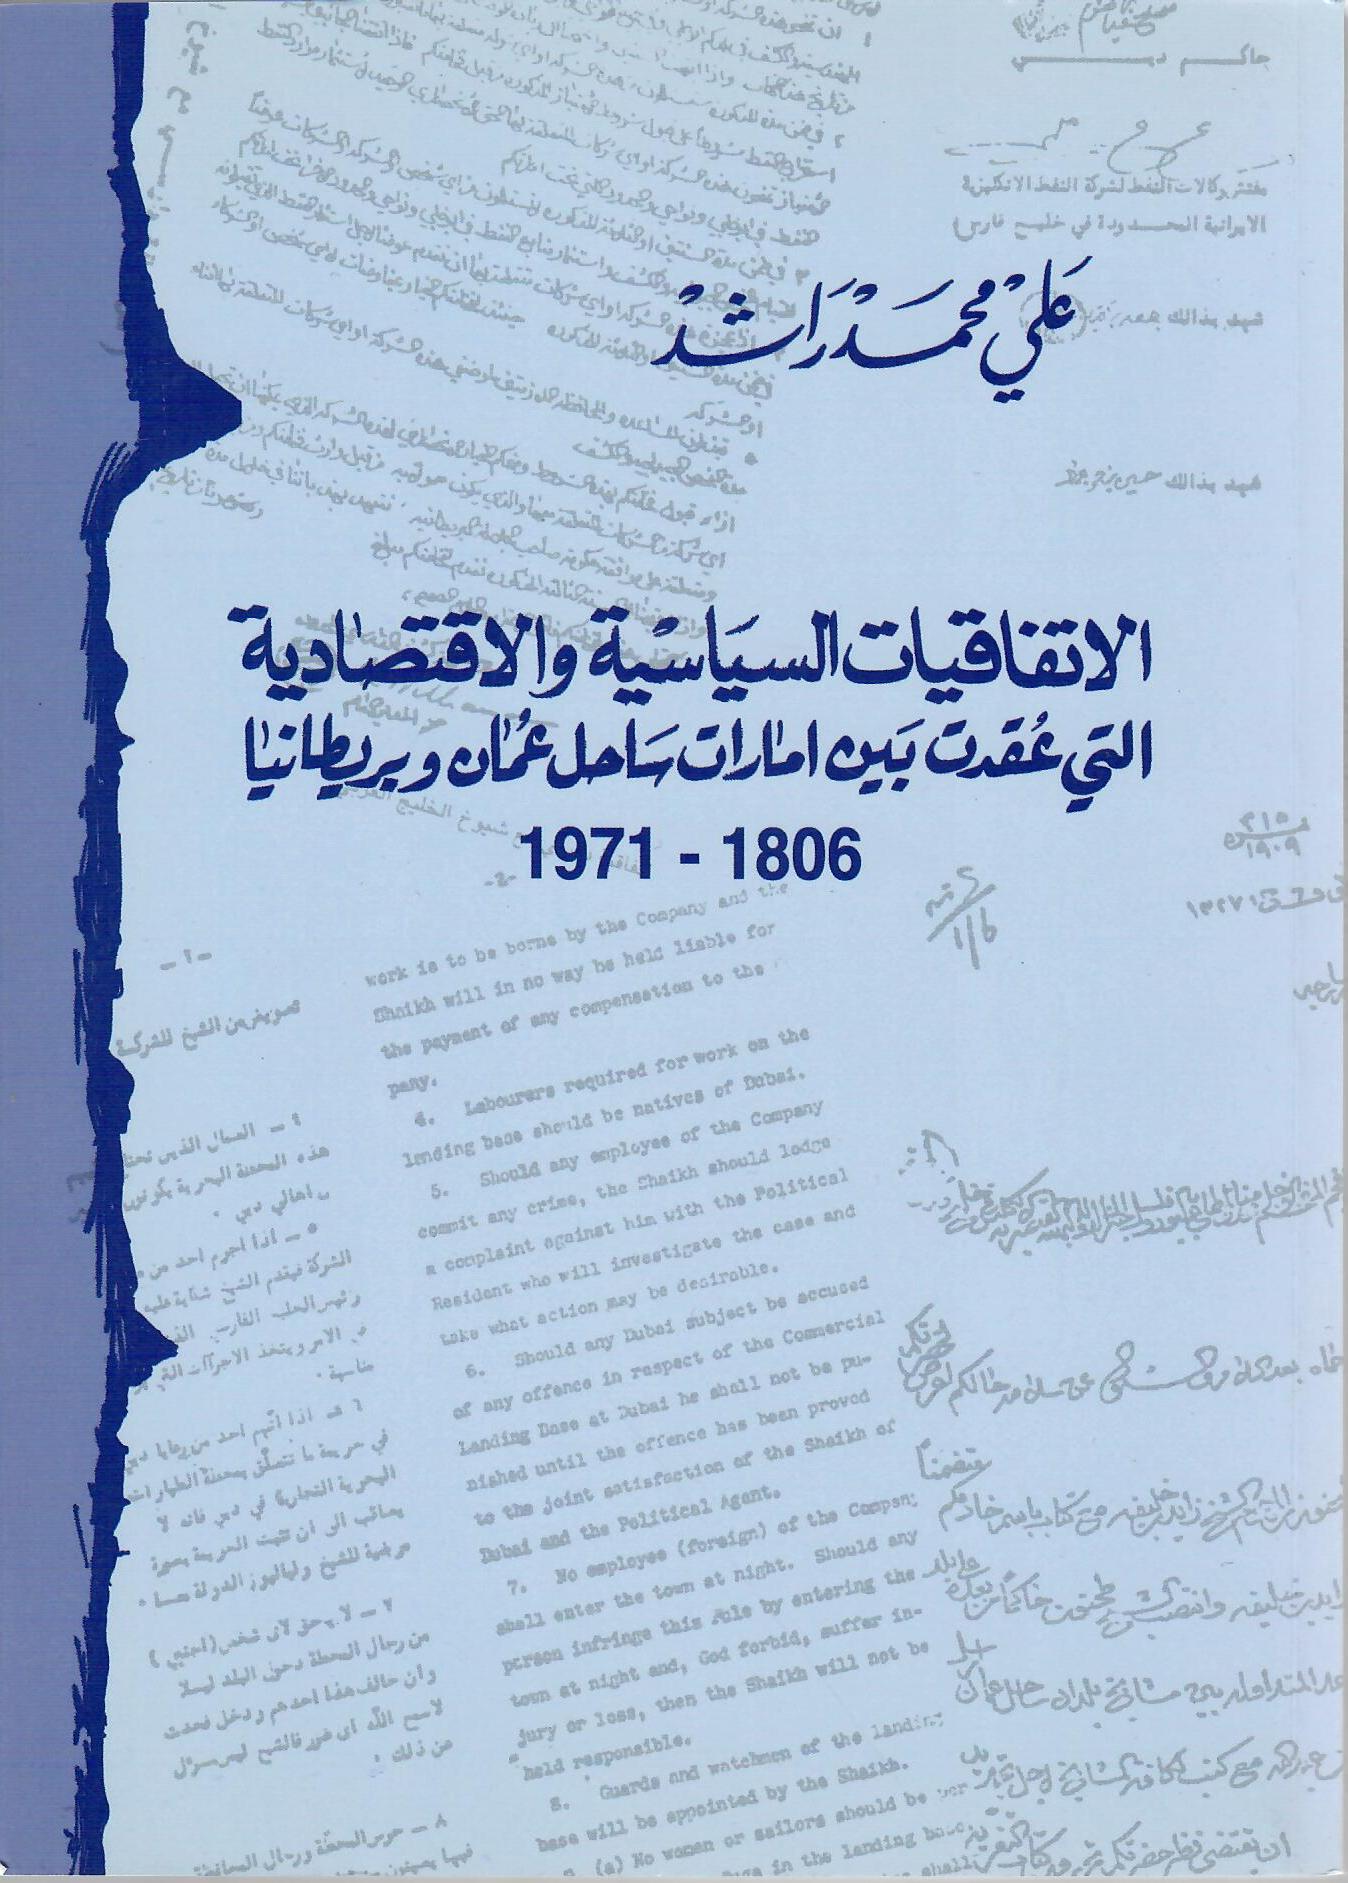 الاتفاقات السياسية والاقتصادية التي عقدت بين امارات ساحل عمان وبريطانيا 1806 - 1971